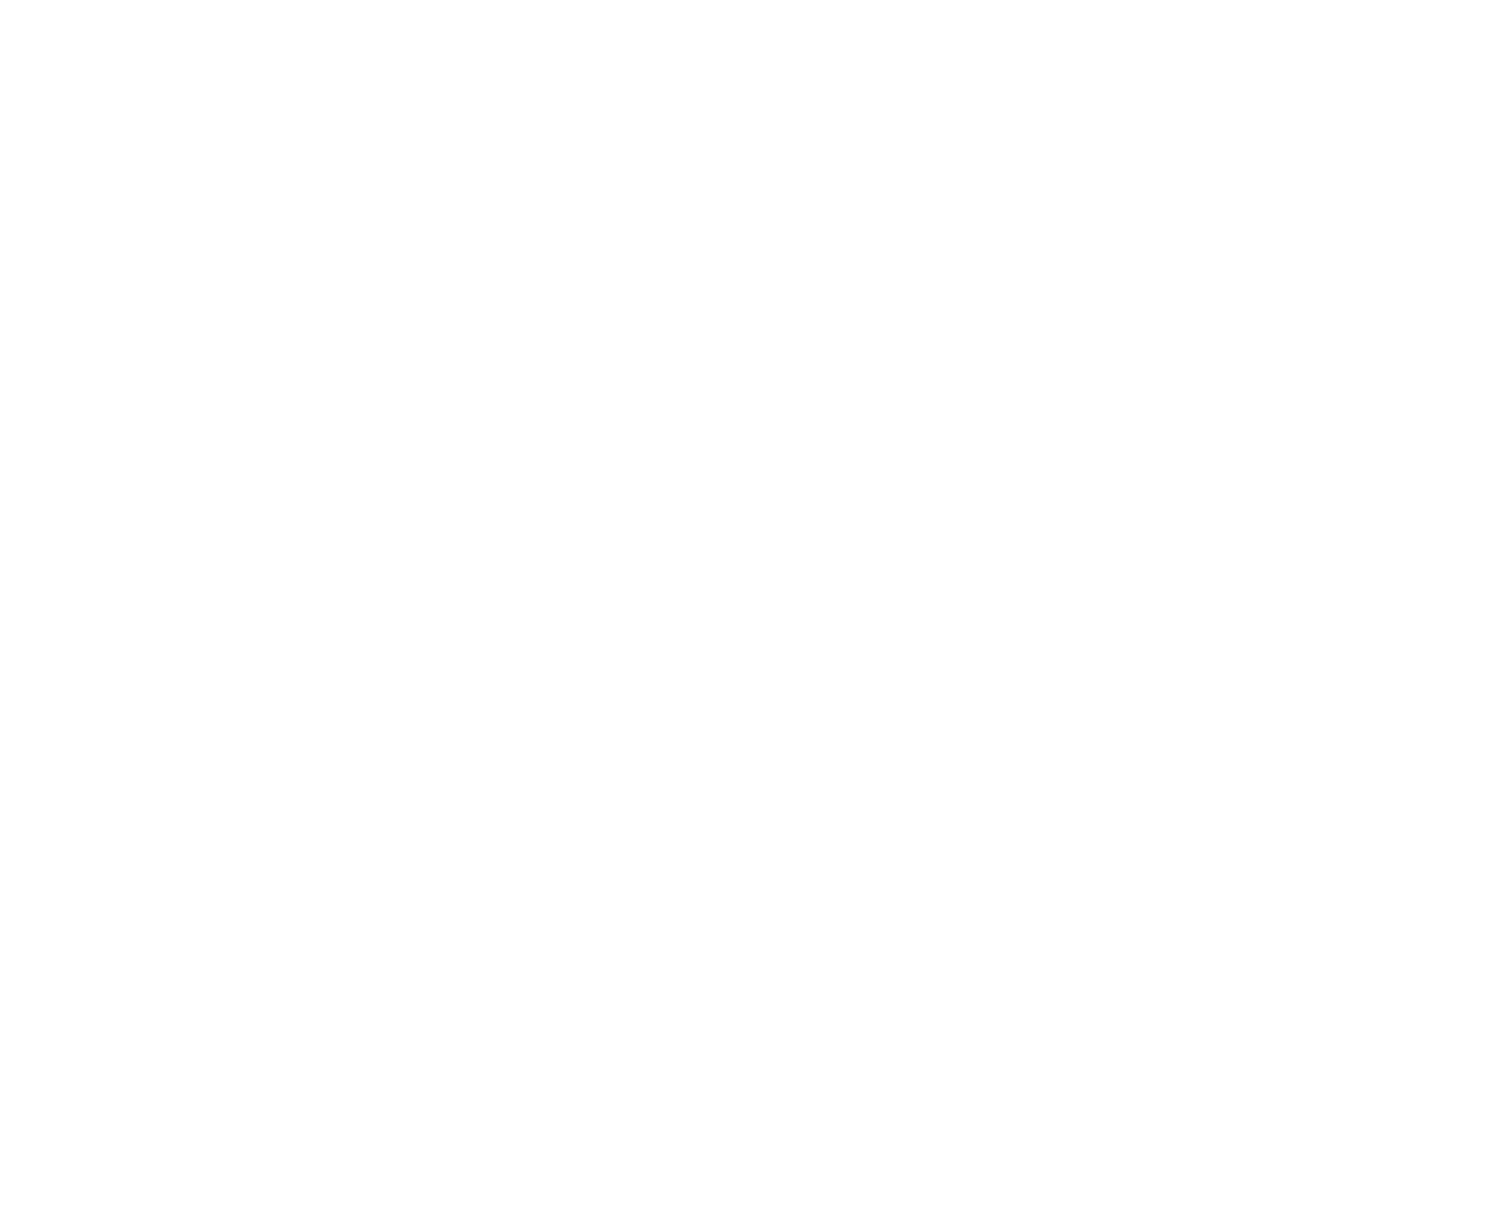 Peihana Farm